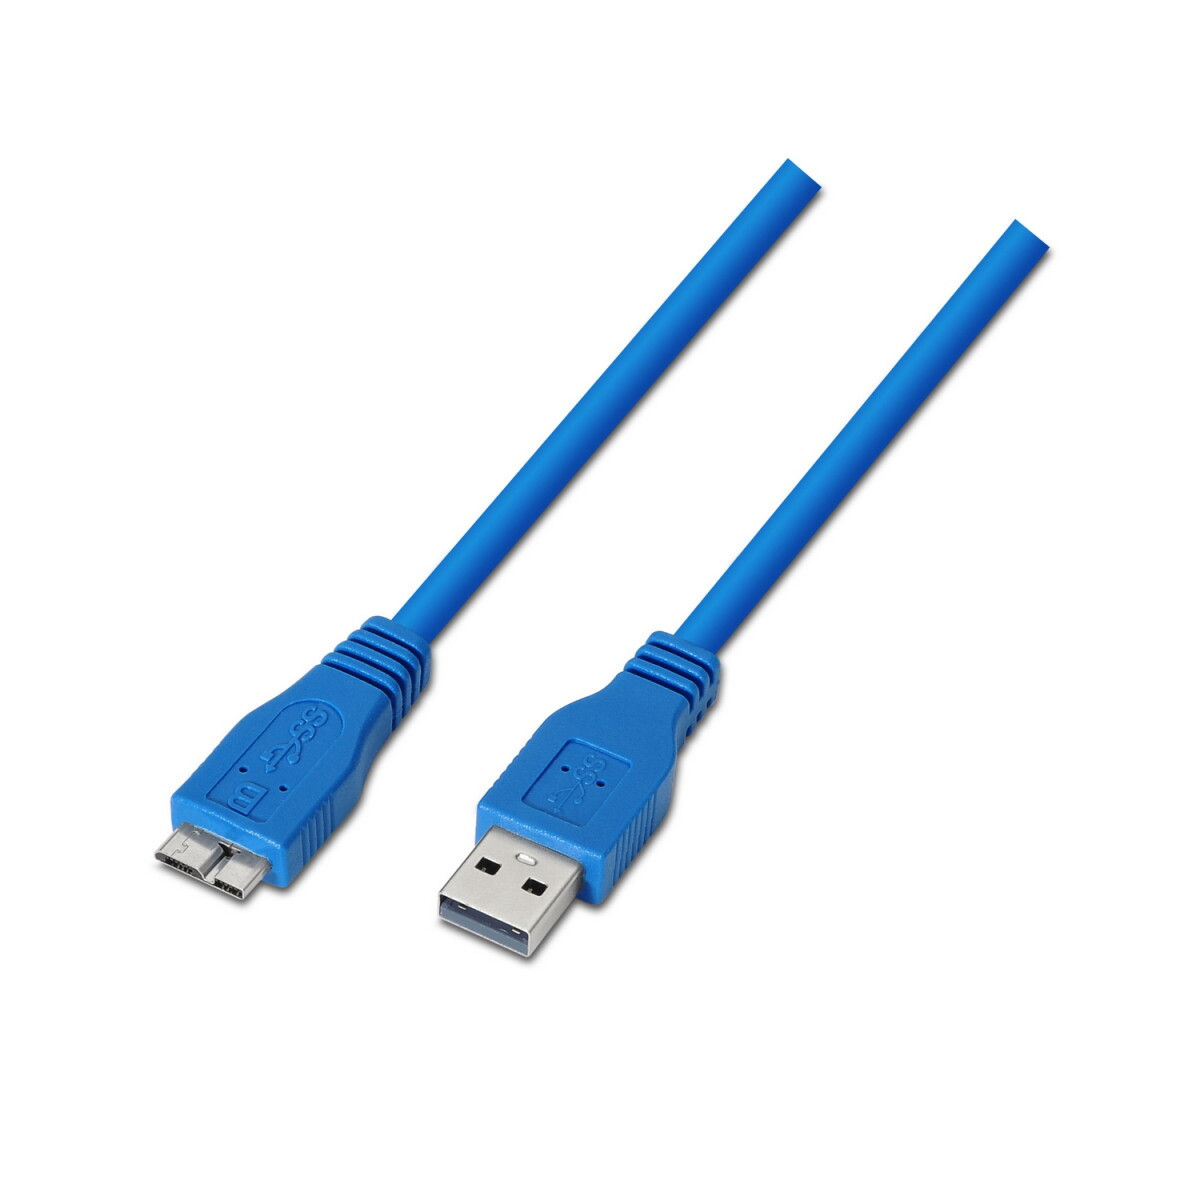 Cable USB 3,0 a MicroB 0,5 mts Azul | Manhattan - Cable Usb 3,0 A Microb 0,5 Mts Azul | Manhattan 